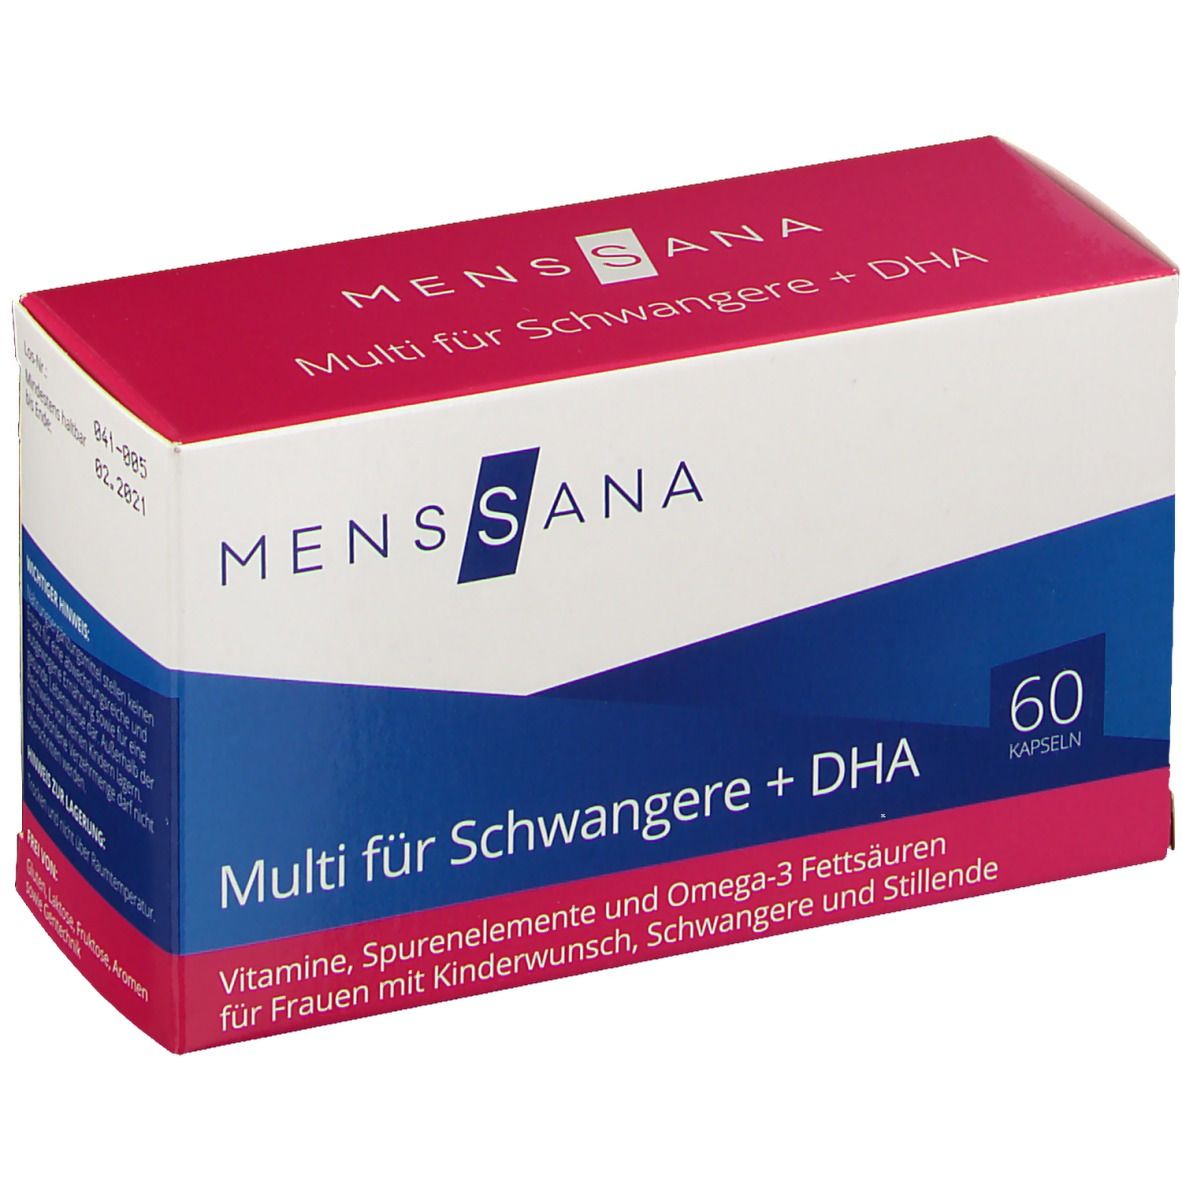 Image of MensSana Multi für Schwangere + DHA